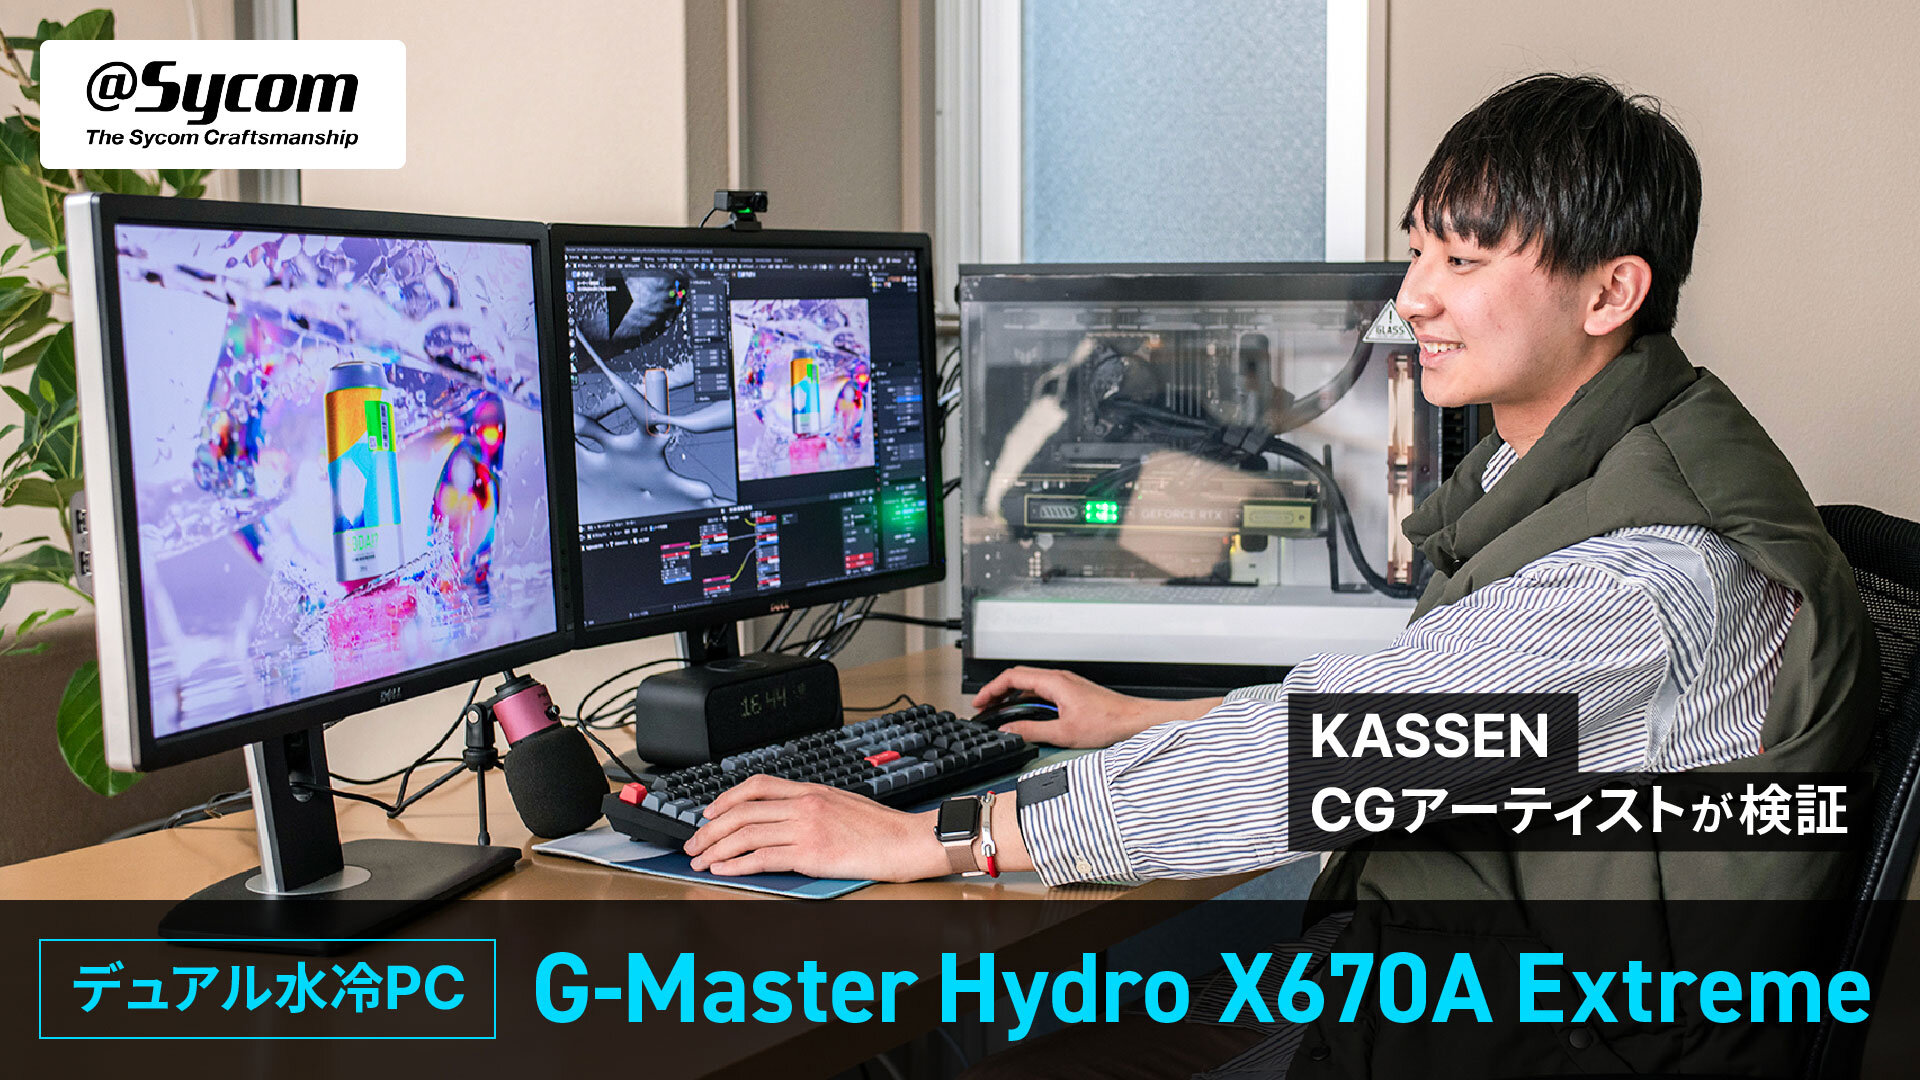 CPUとグラフィックスボードを水冷化し、高速処理と静音性を実現！ KASSENの躍進を支える若手CGアーティストがサイコムのデュアル水冷PC「G-Master Hydro X670A Extreme」を検証